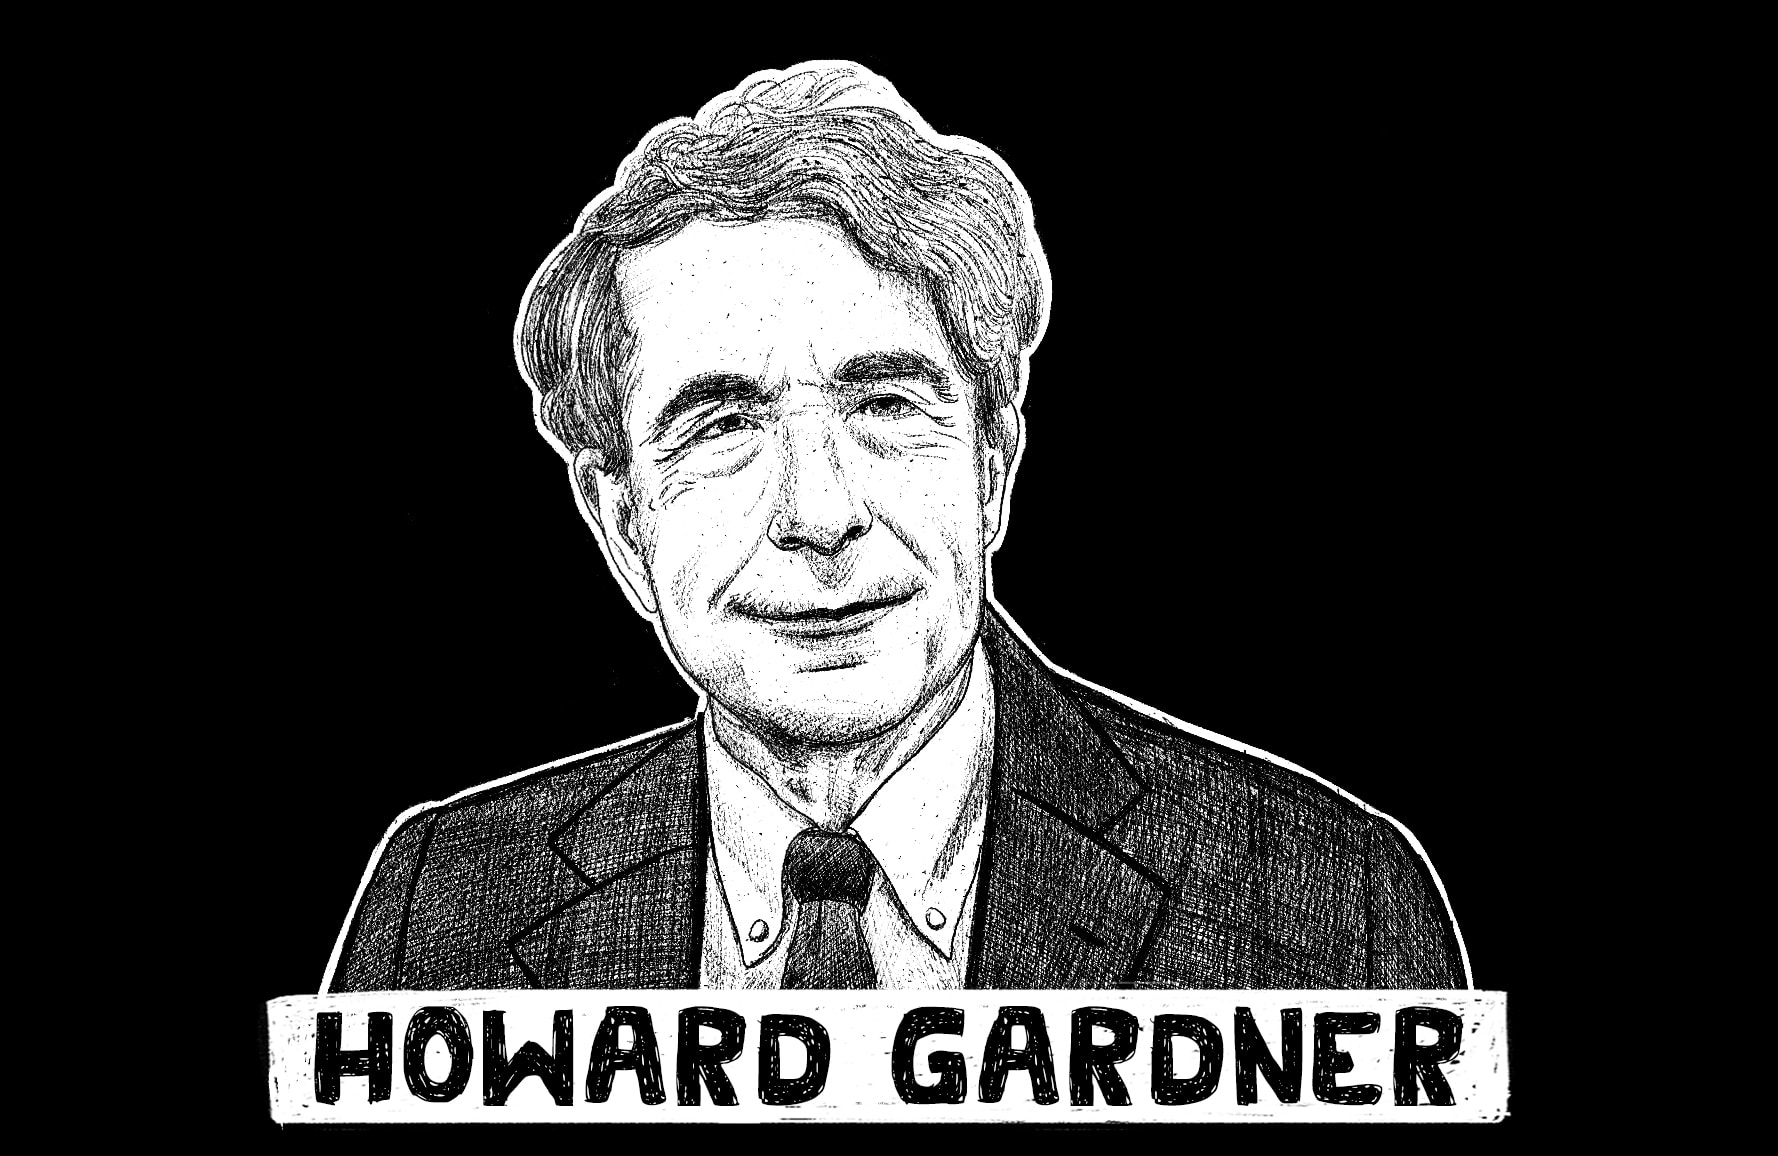 Howard Gardner